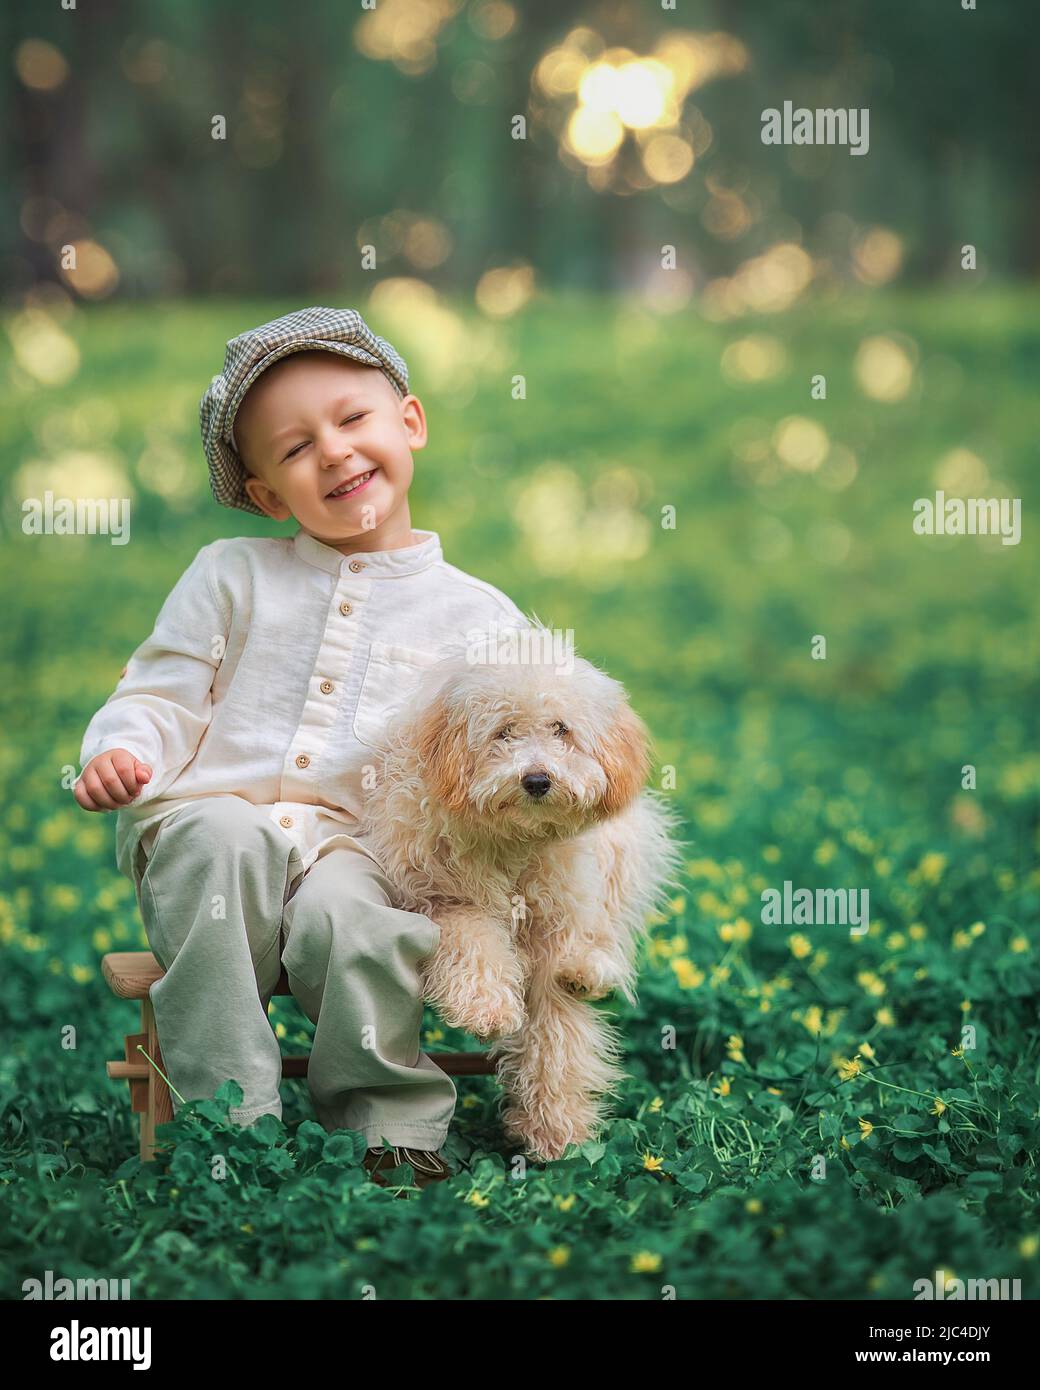 Il ragazzino e il suo cane si stoppano insieme sull'erba. Bambino felice abbracciando il suo animale sorridendo con gli occhi chiusi. Foto Stock